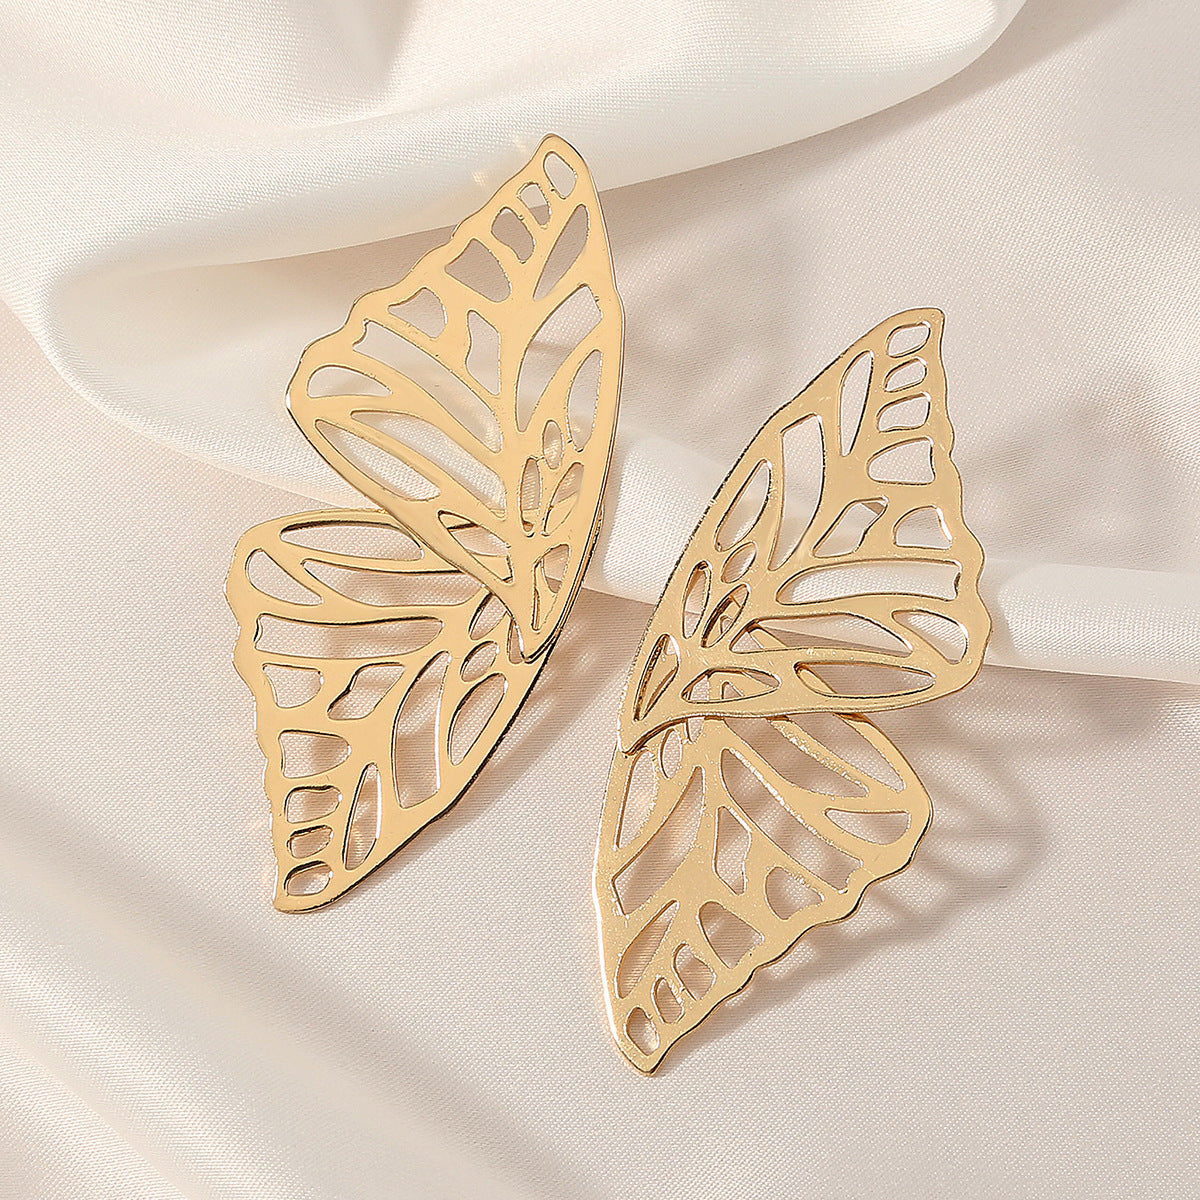 Overblown Butterfly Stud earrings